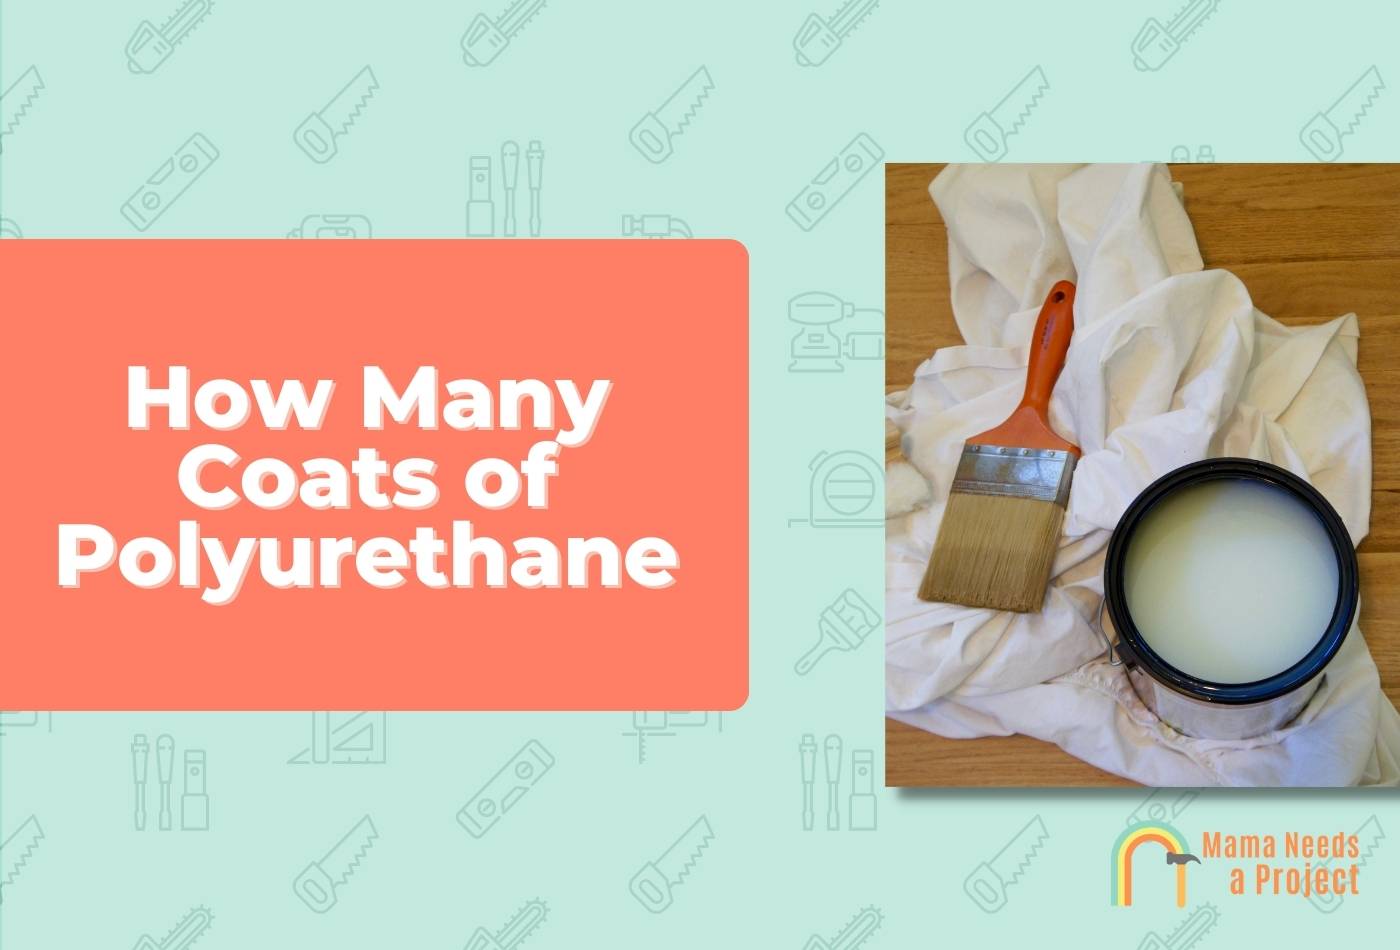 How Many Coats of Polyurethane